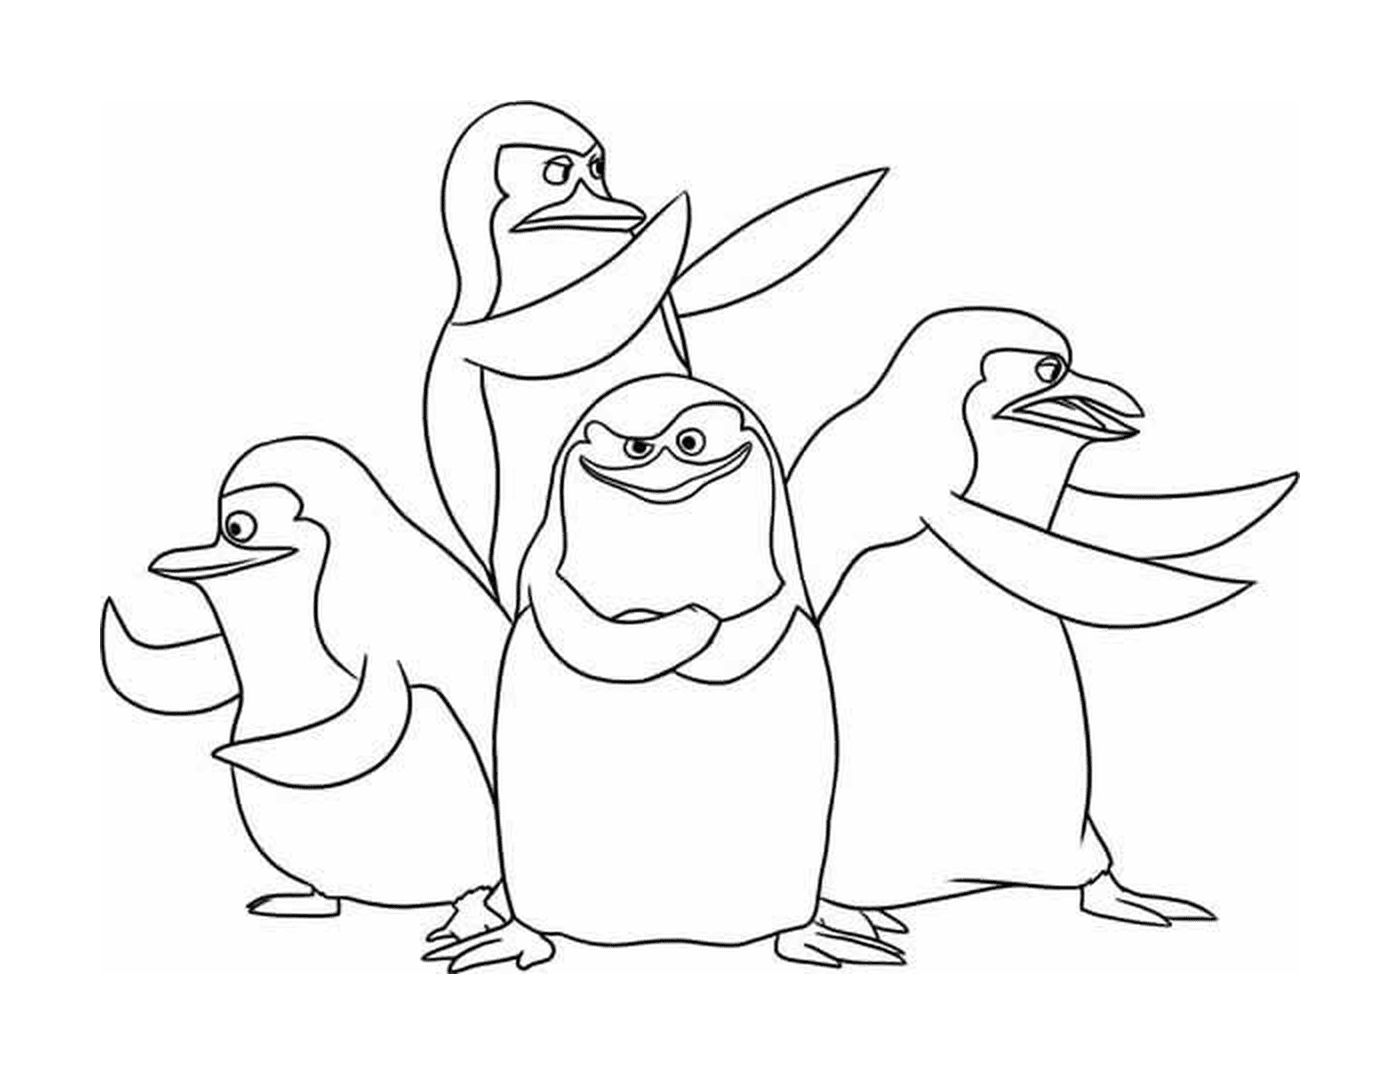  Группа пингвинов рядами 